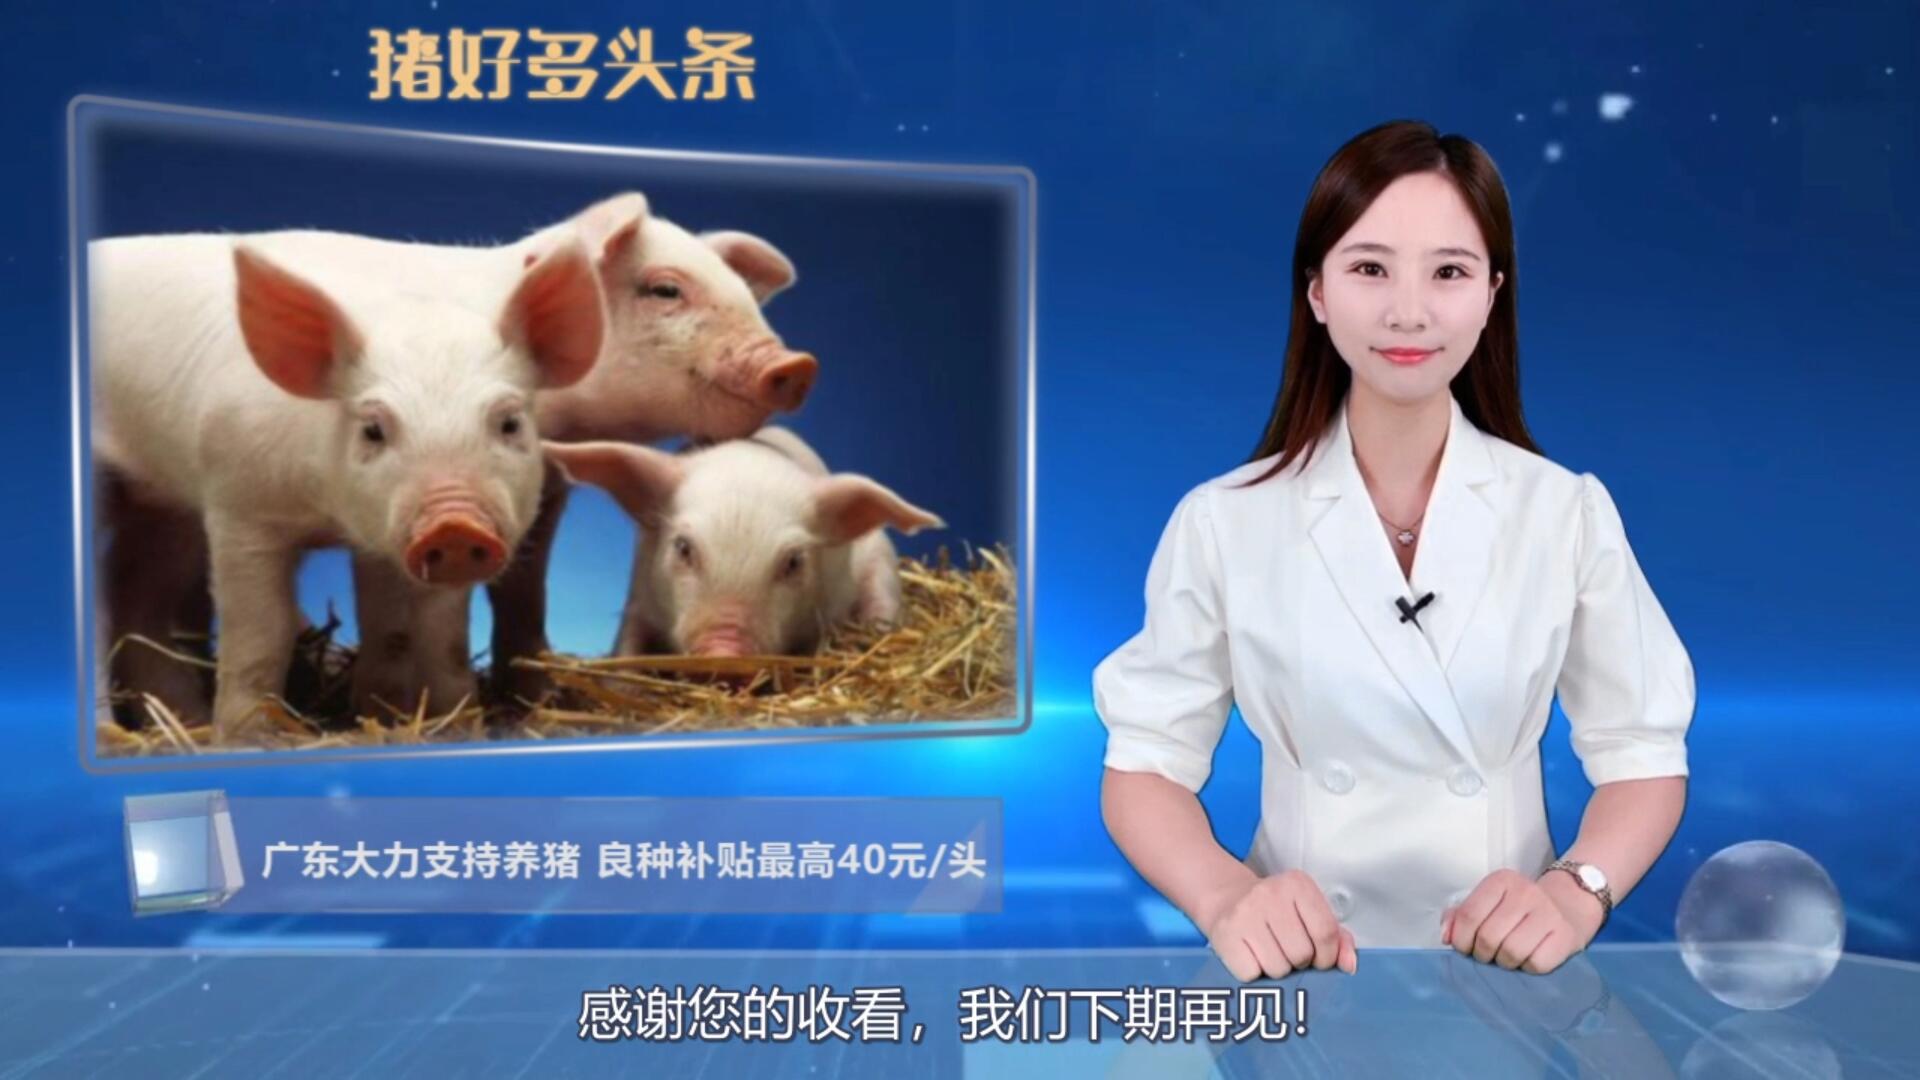  广东大力支持养猪！良种补贴最高40元、109家猪企获3,374万元贴息 